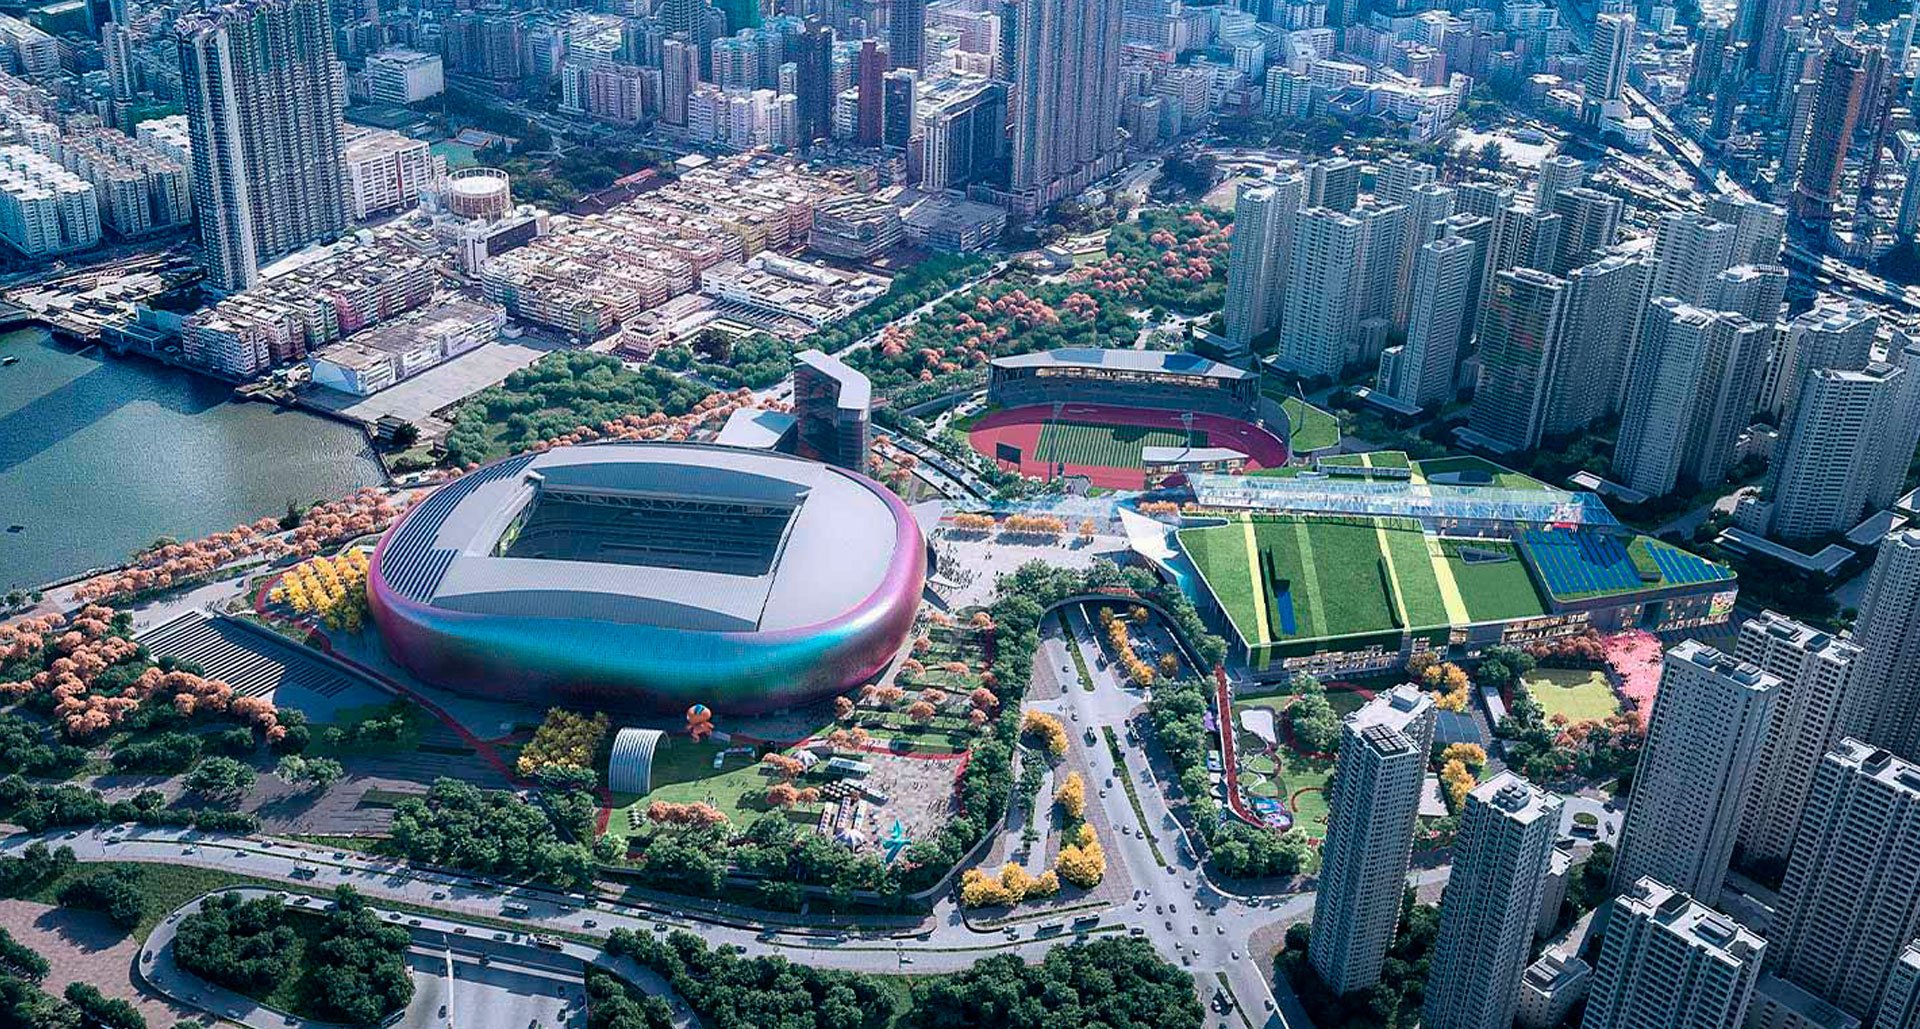 kai-tak-sports-park-stadium-hong-kong-hong-kong-asm-global.jpg